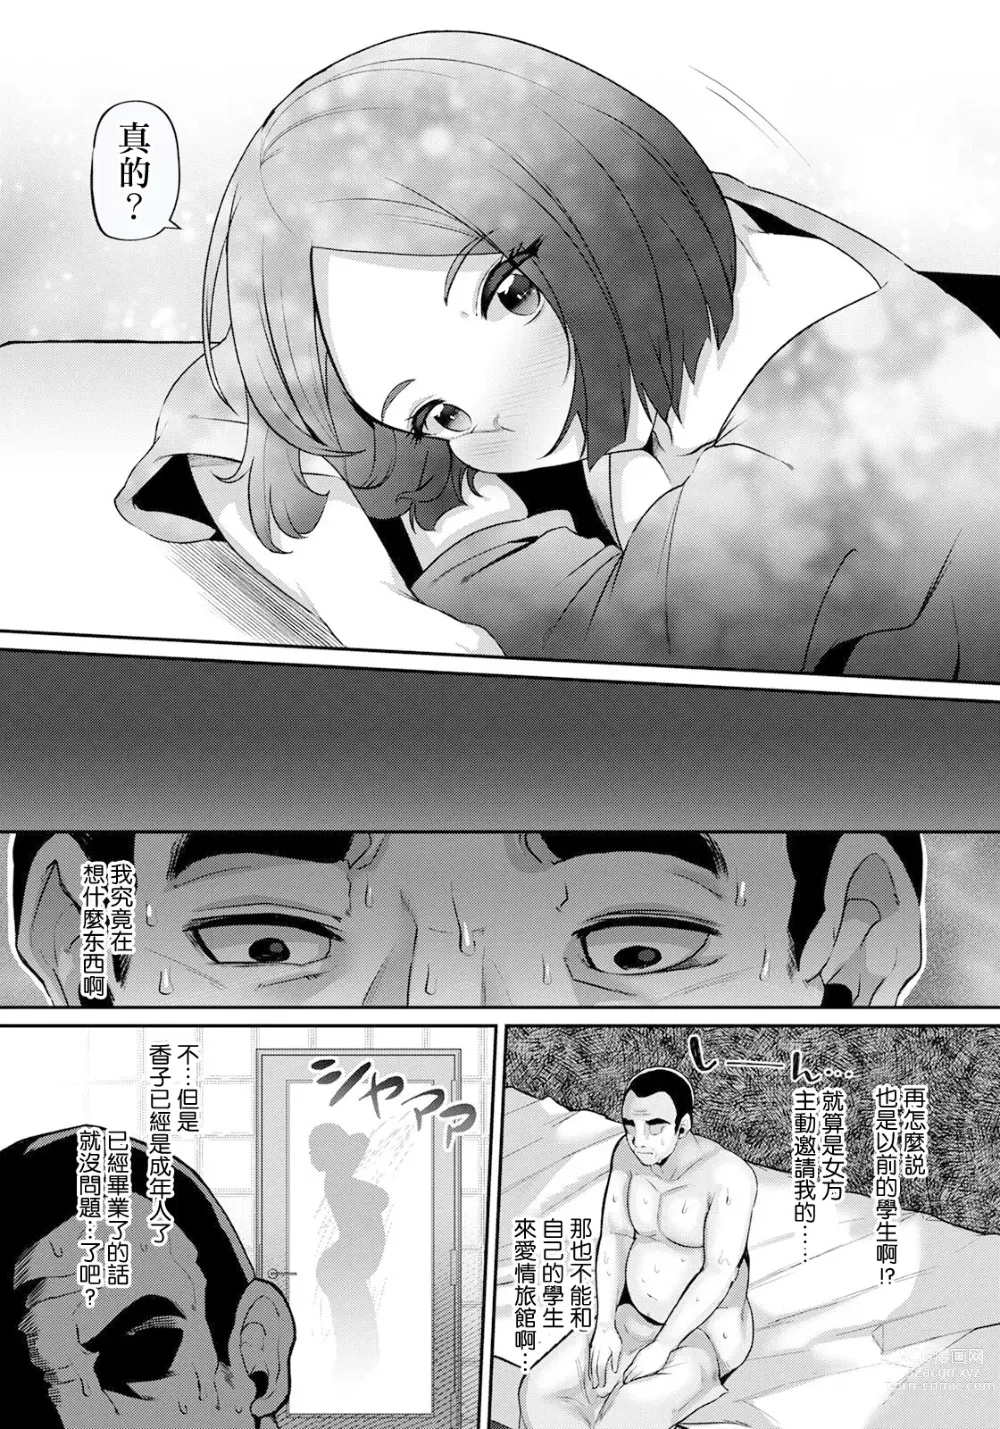 Page 4 of manga Seishun Playback